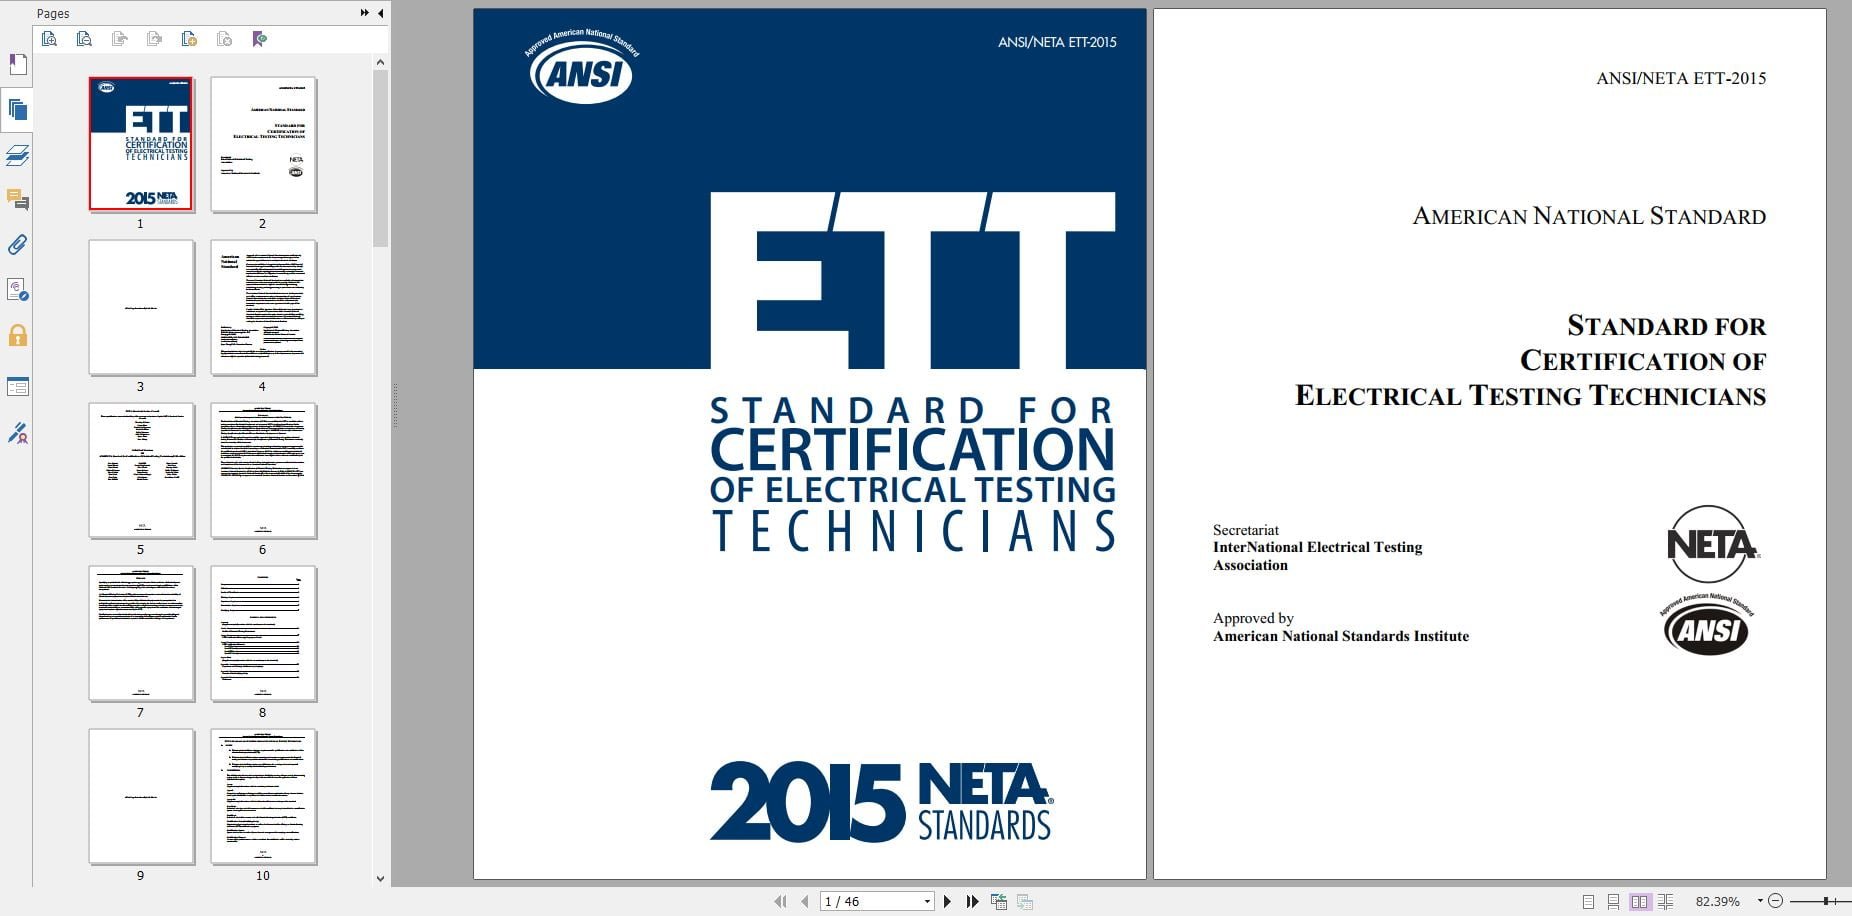 دانلود رایگان استاندارد ANSI/NETA ETT-2015 خرید استاندارد Standard For Certification Of Electrical Testing Technicians استاندارد انجمن جهاني تست الکترونيک InterNational Electrical Testing Association خرید PDF استاندارد NETA ETT گیگاپیپر